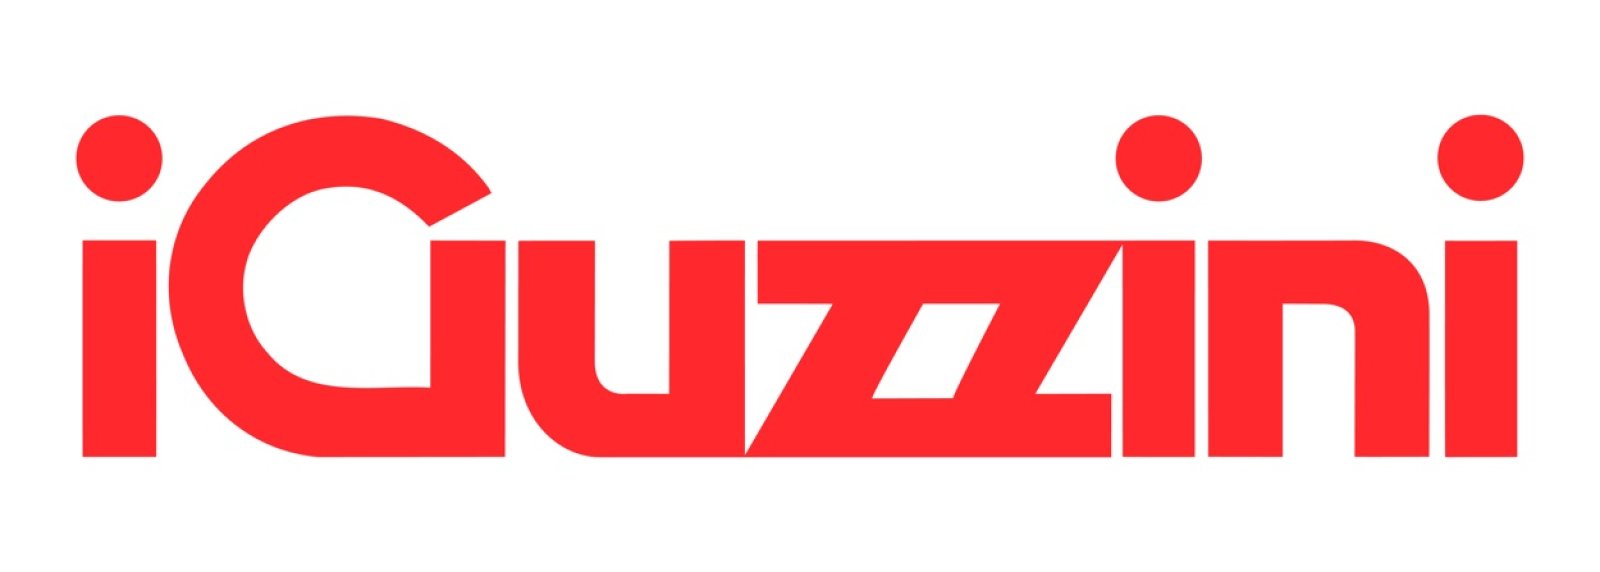 Logo iGuzzini illuminazione